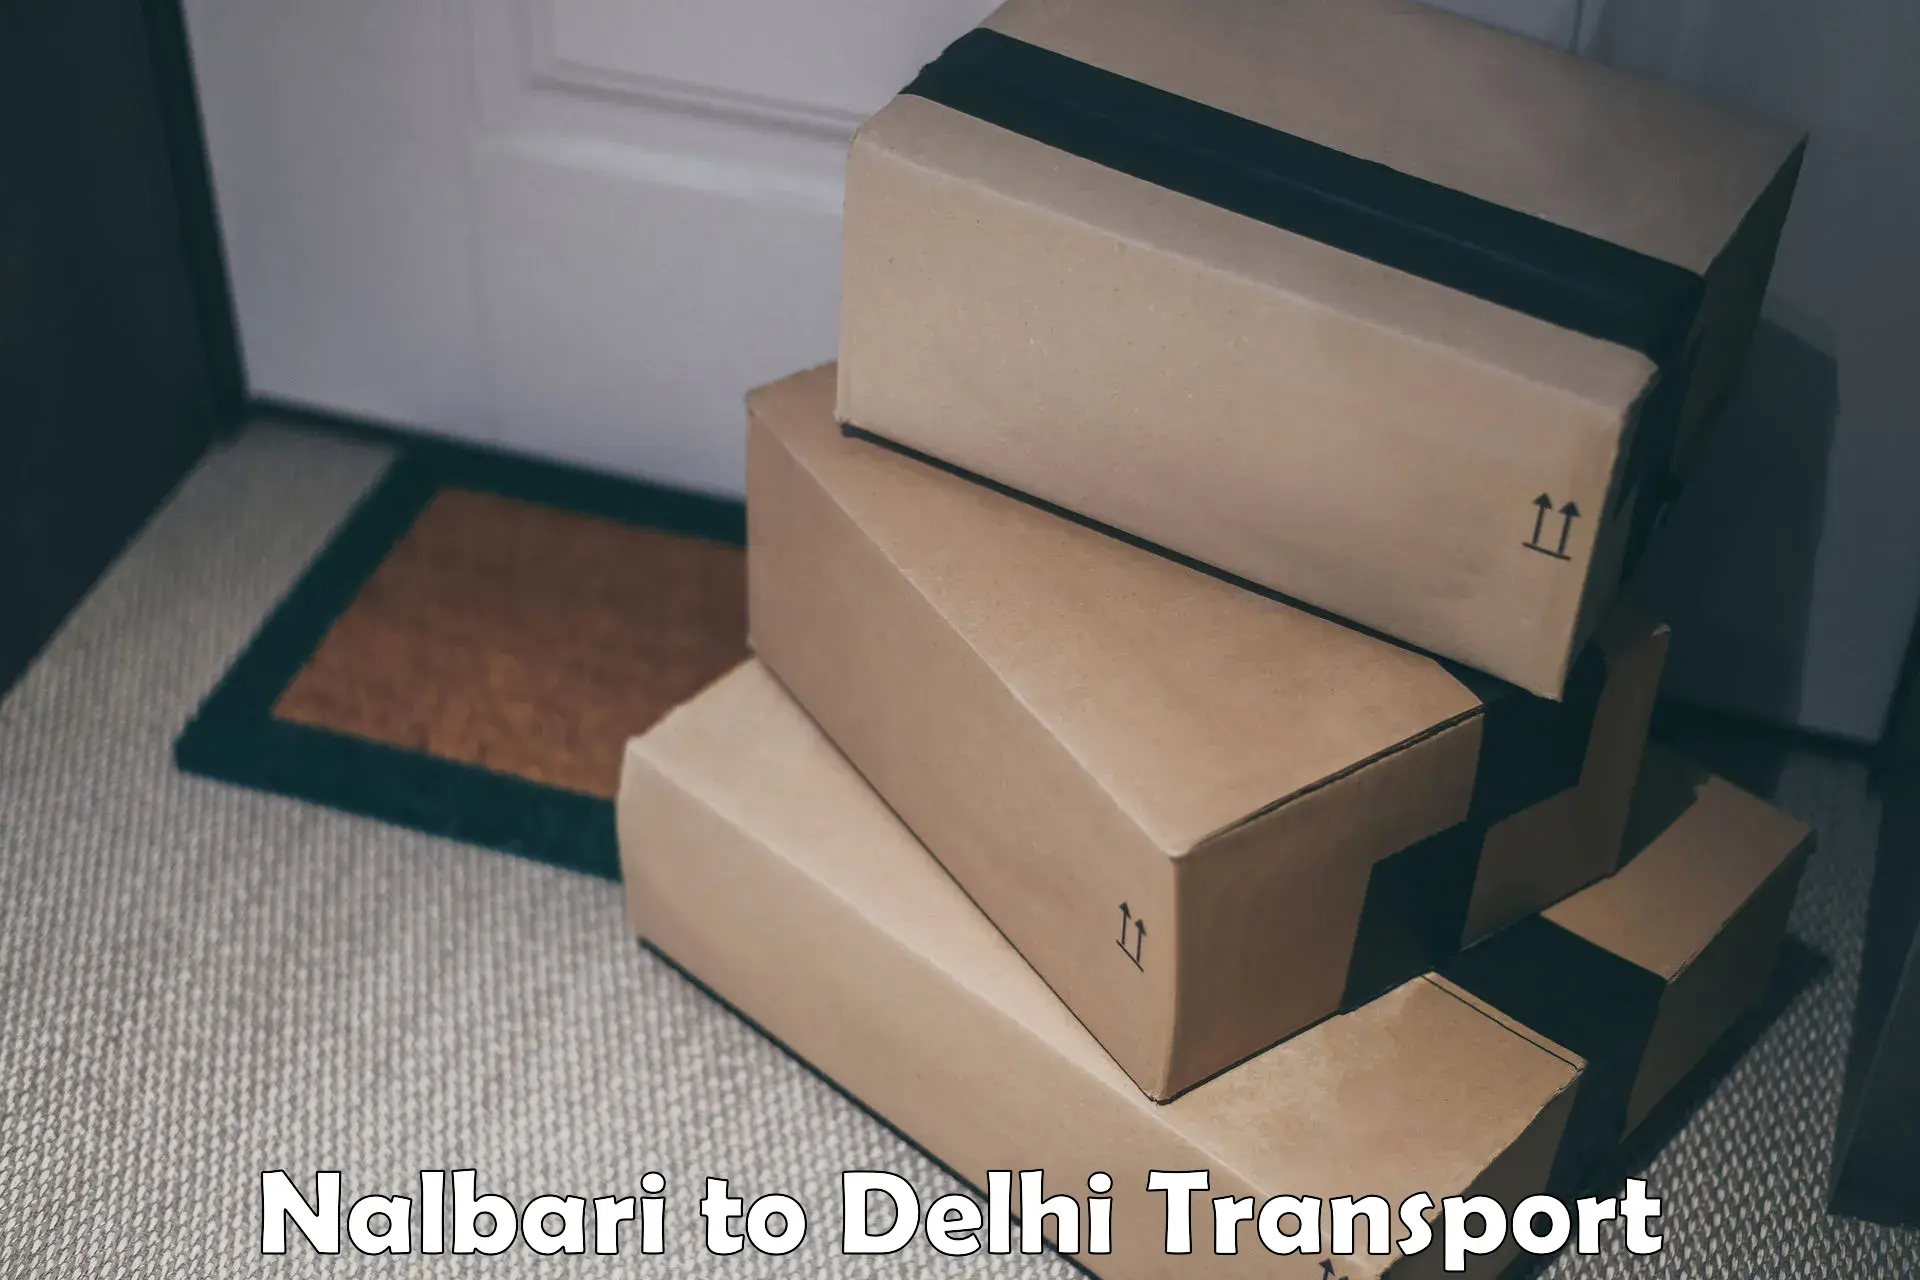 Air cargo transport services Nalbari to Delhi